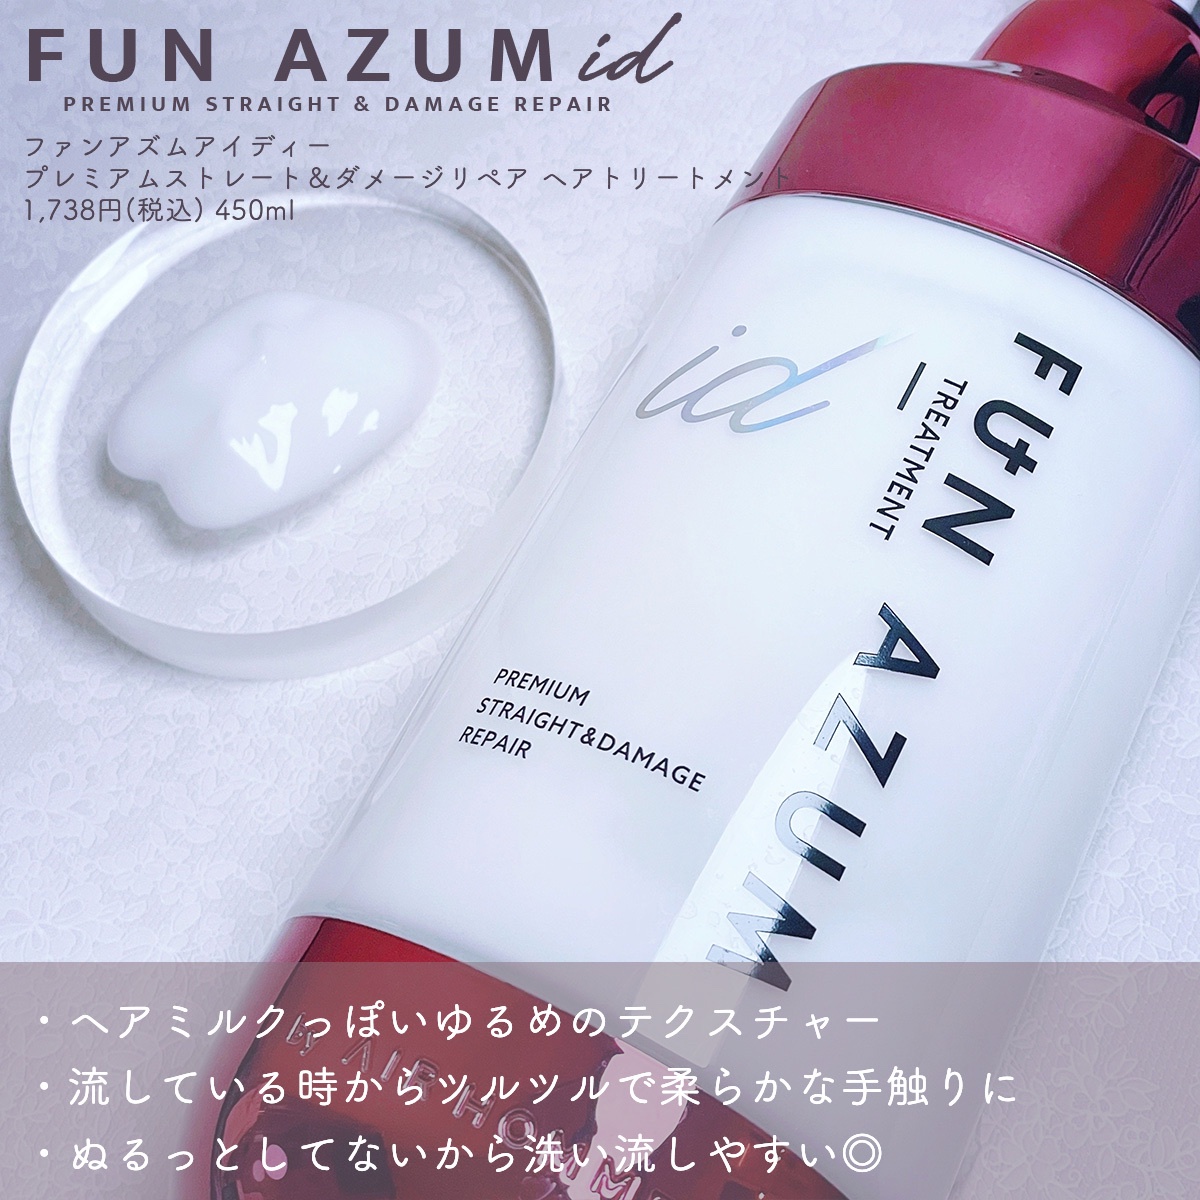 FUN AZUM id / プレミアムストレート＆ダメージリペア シャンプー